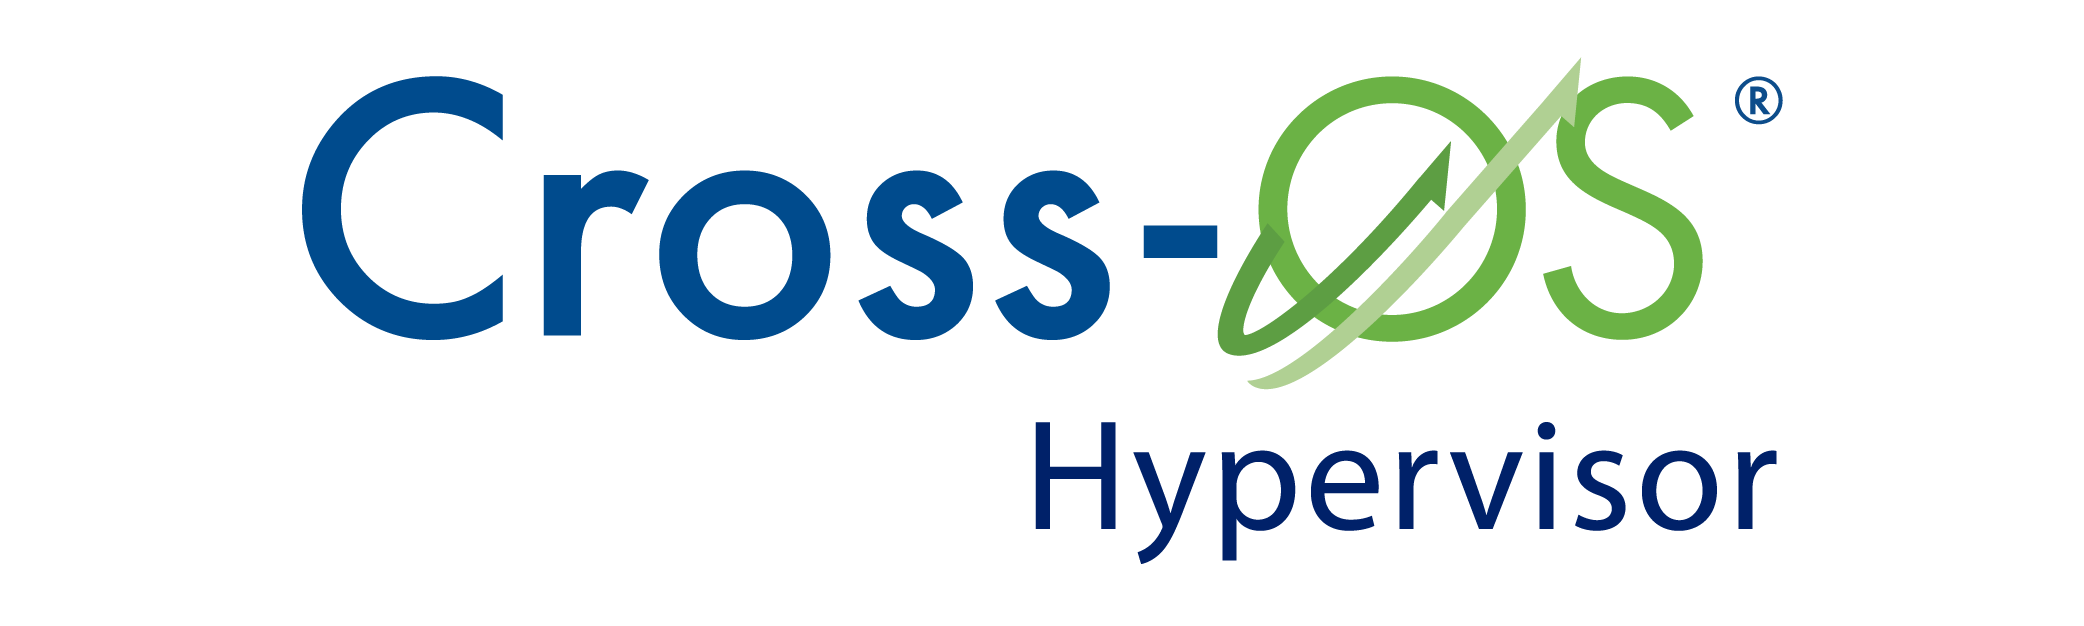 CrossOS Hyp Logo